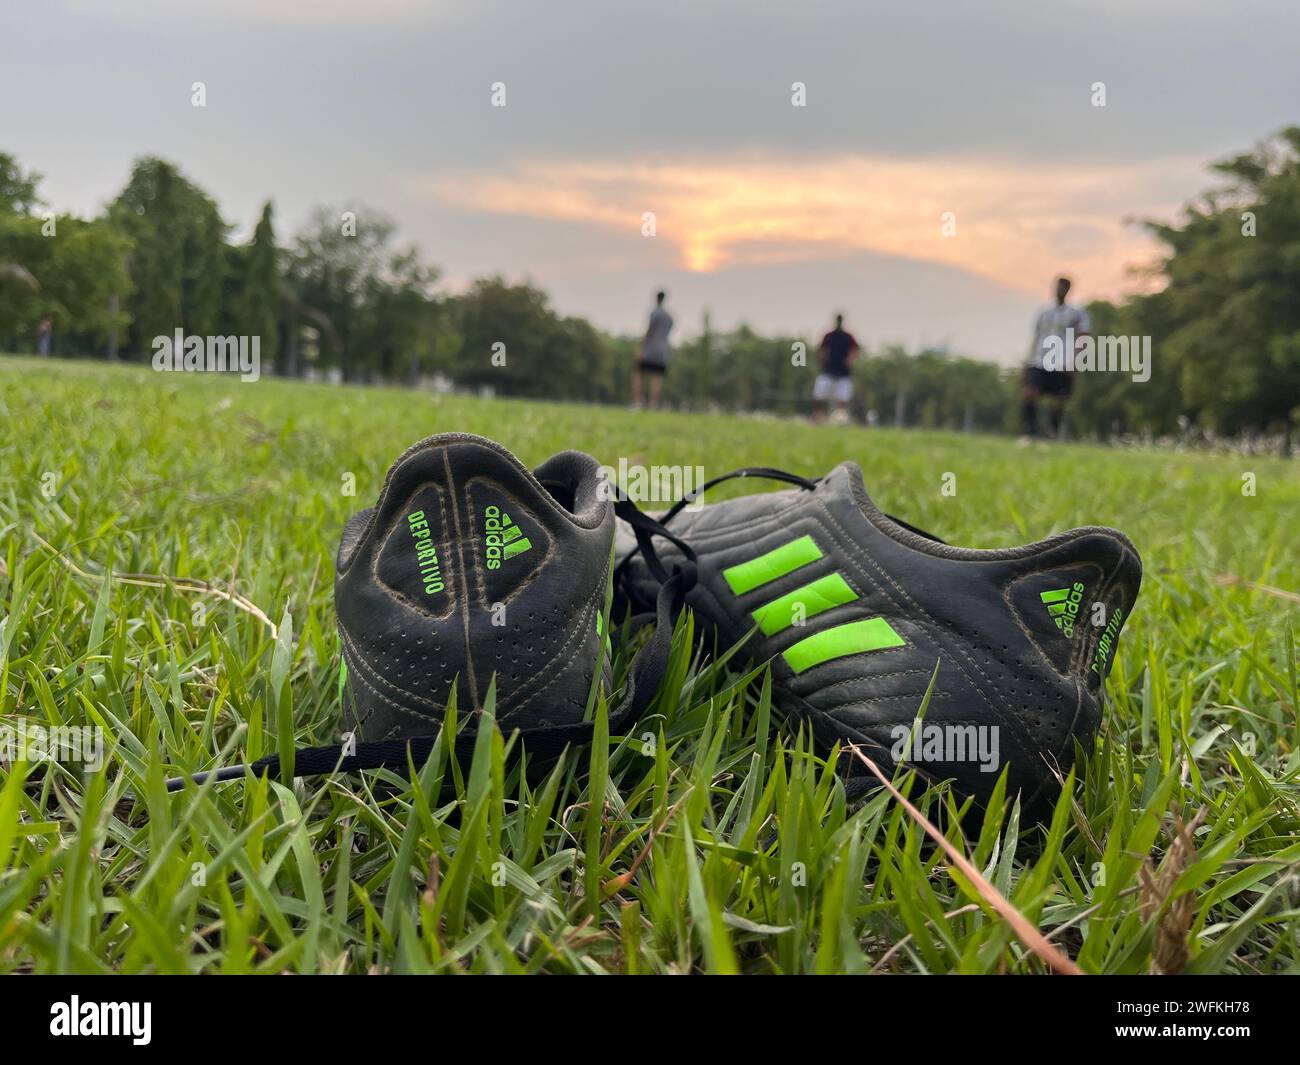 Chaussure de sport laissée dans le champ herbeux Banque D'Images